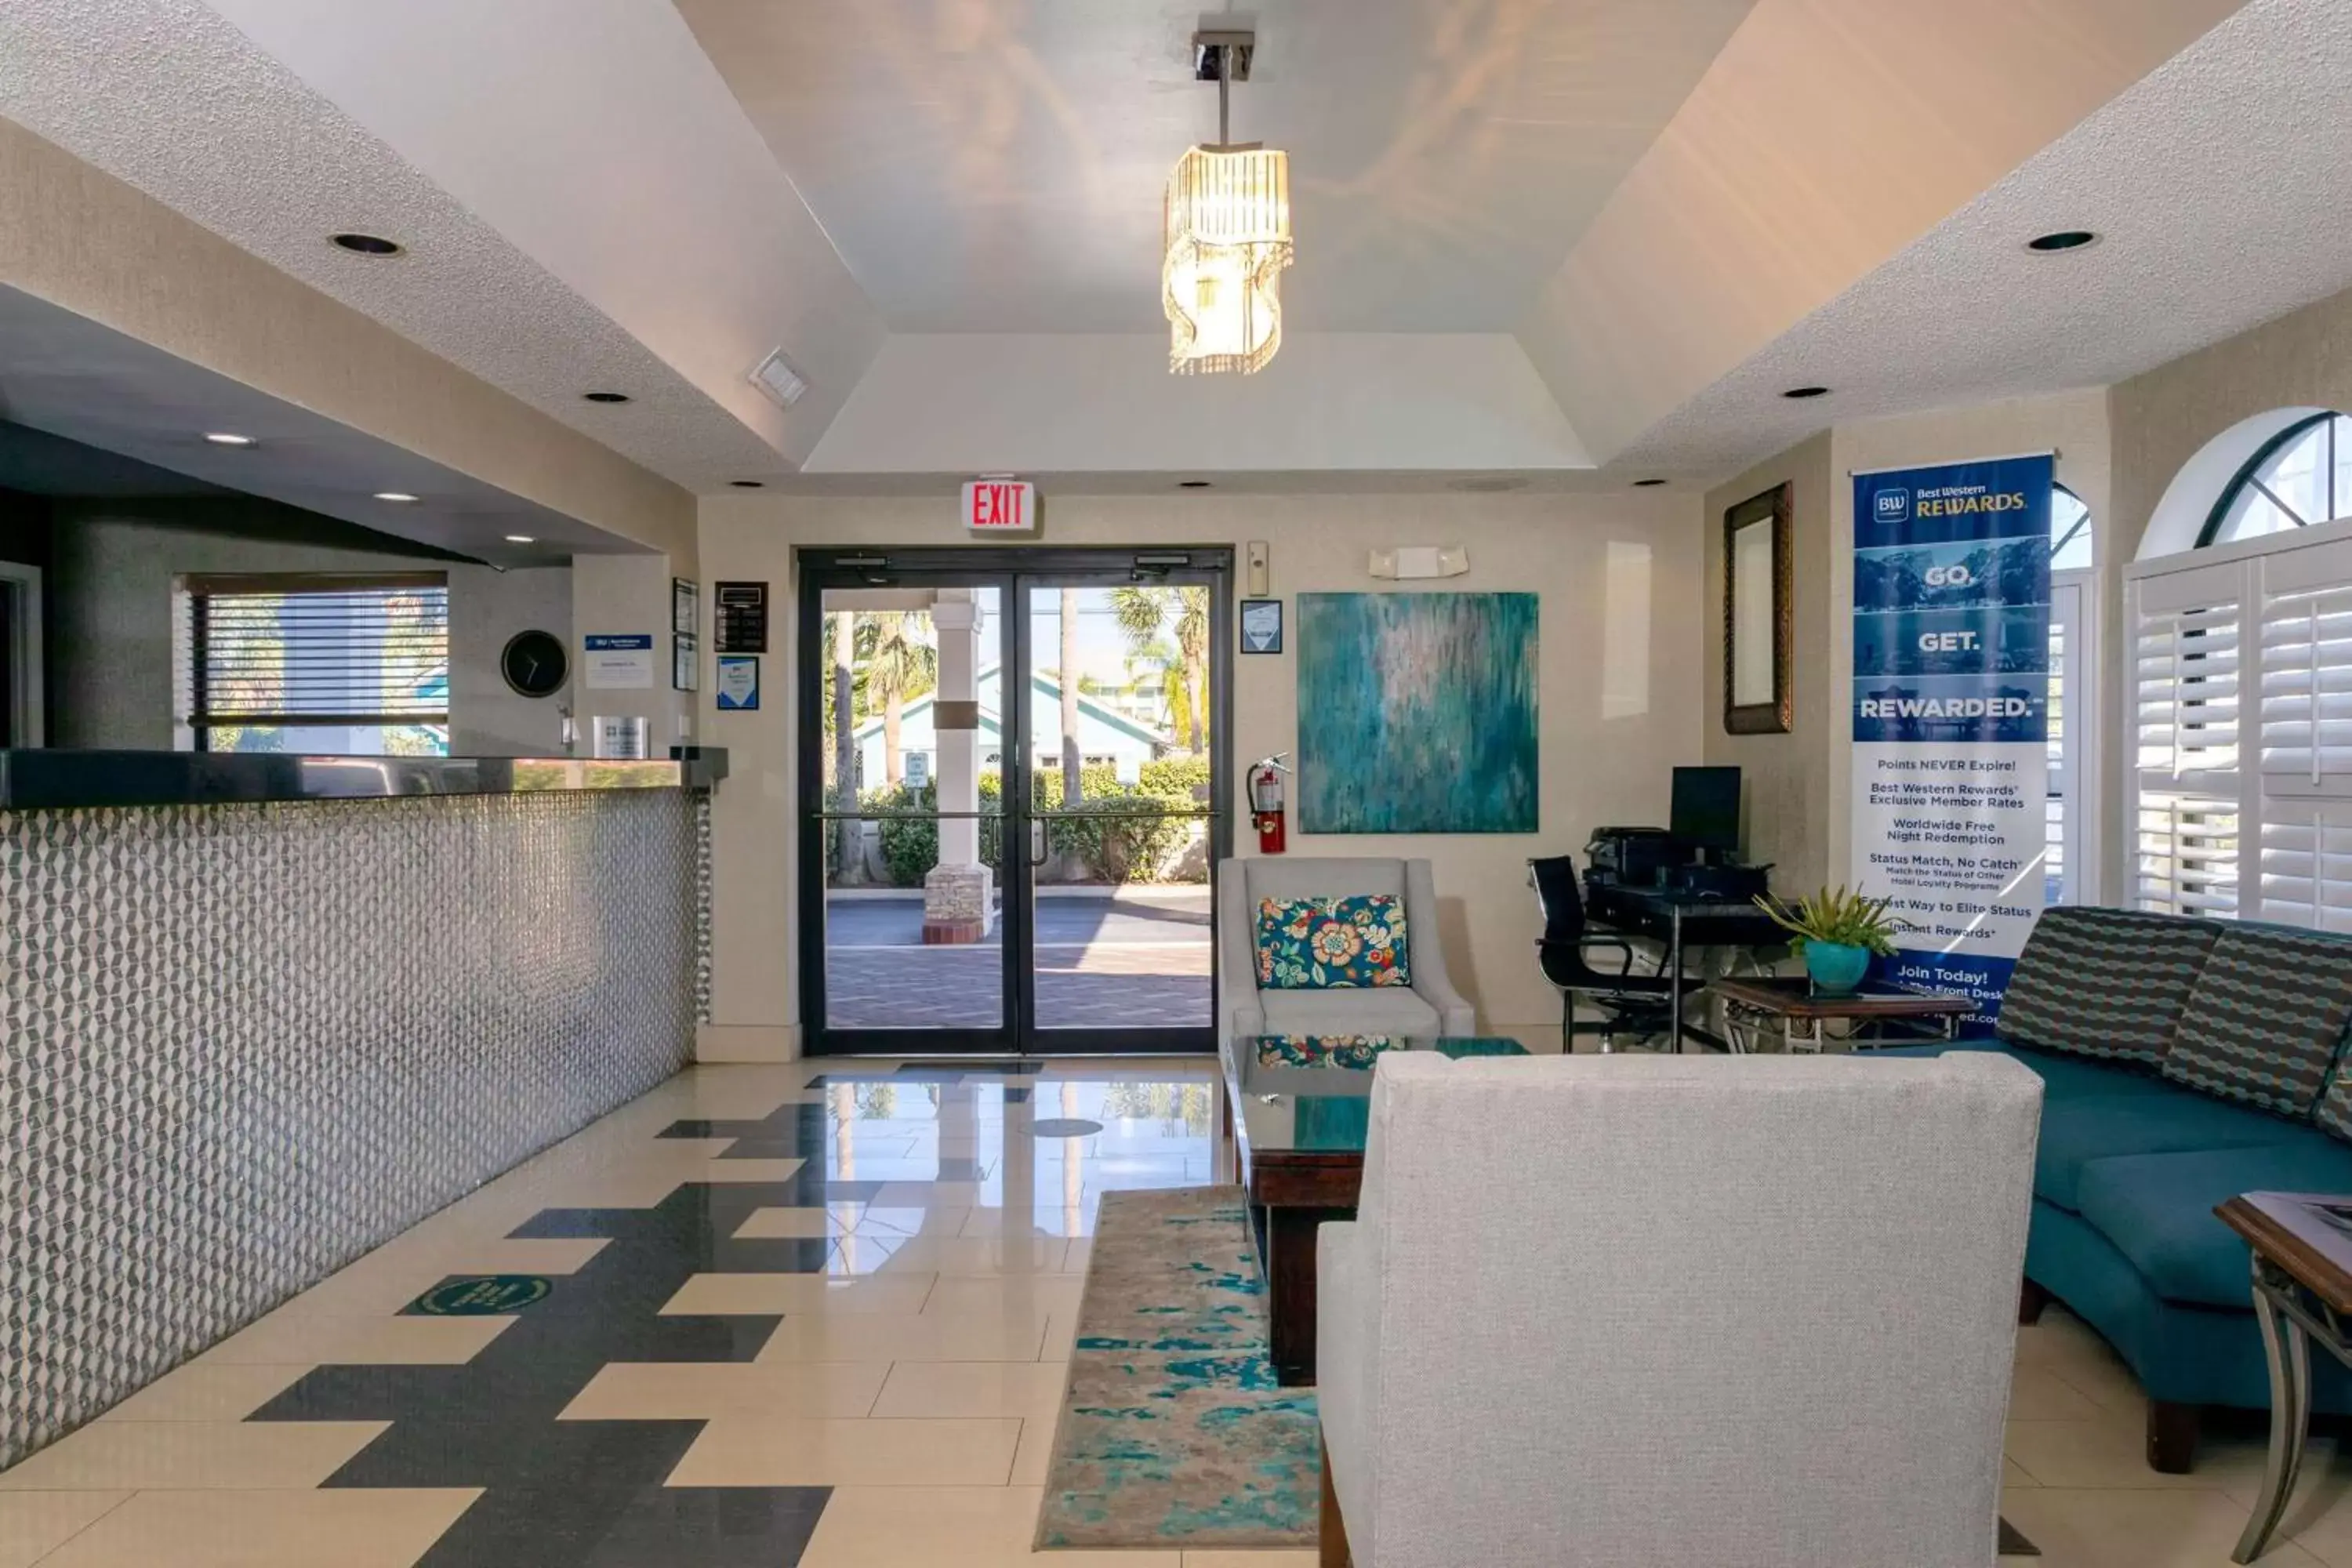 Lobby or reception, Lobby/Reception in Best Western St. Augustine Beach Inn